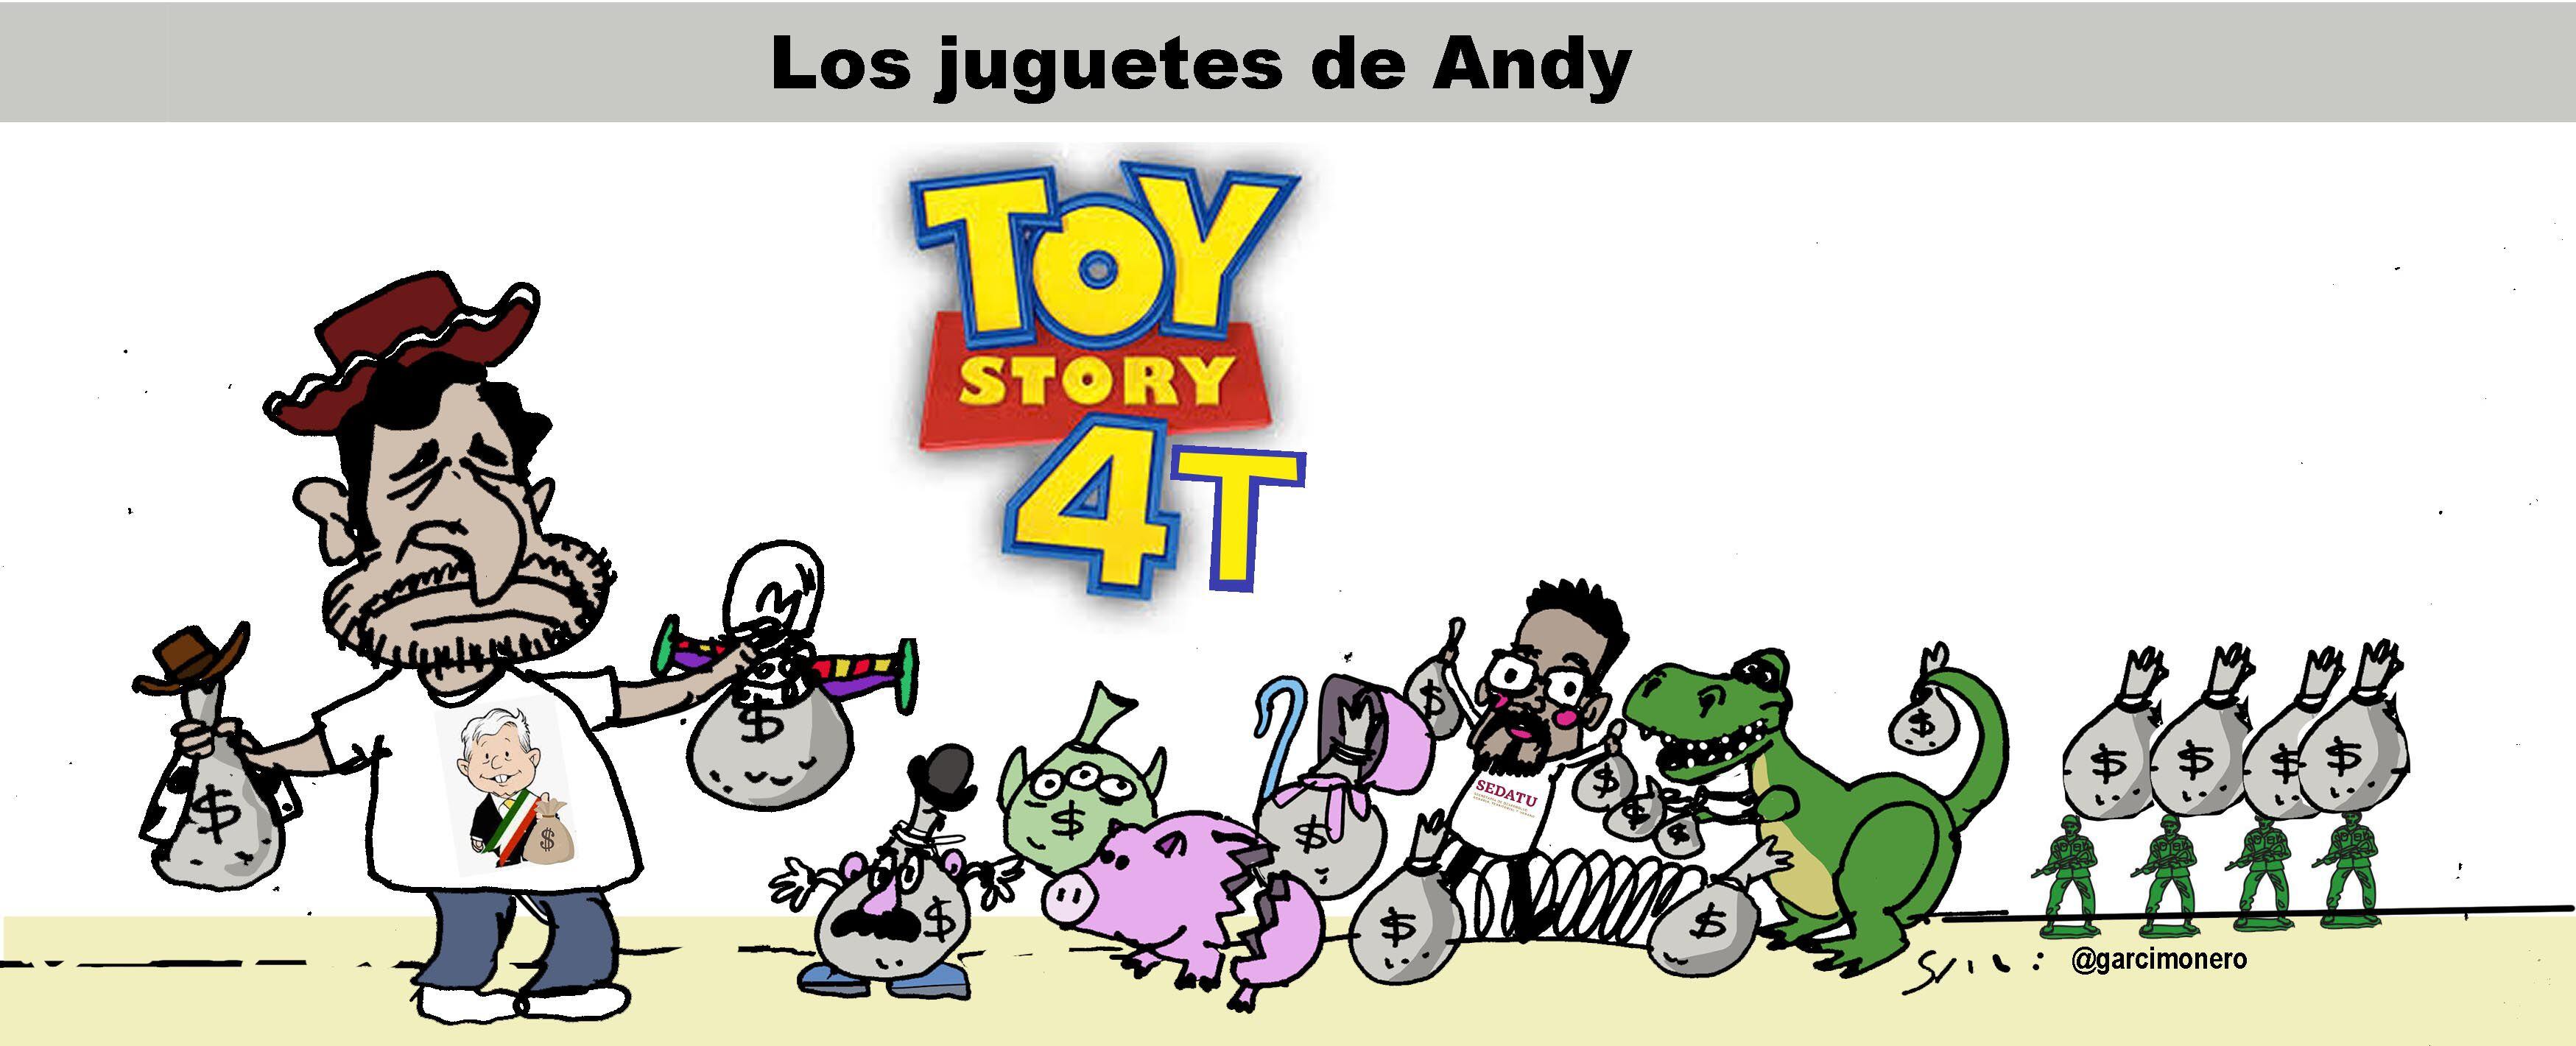 Los juguetes de Andy